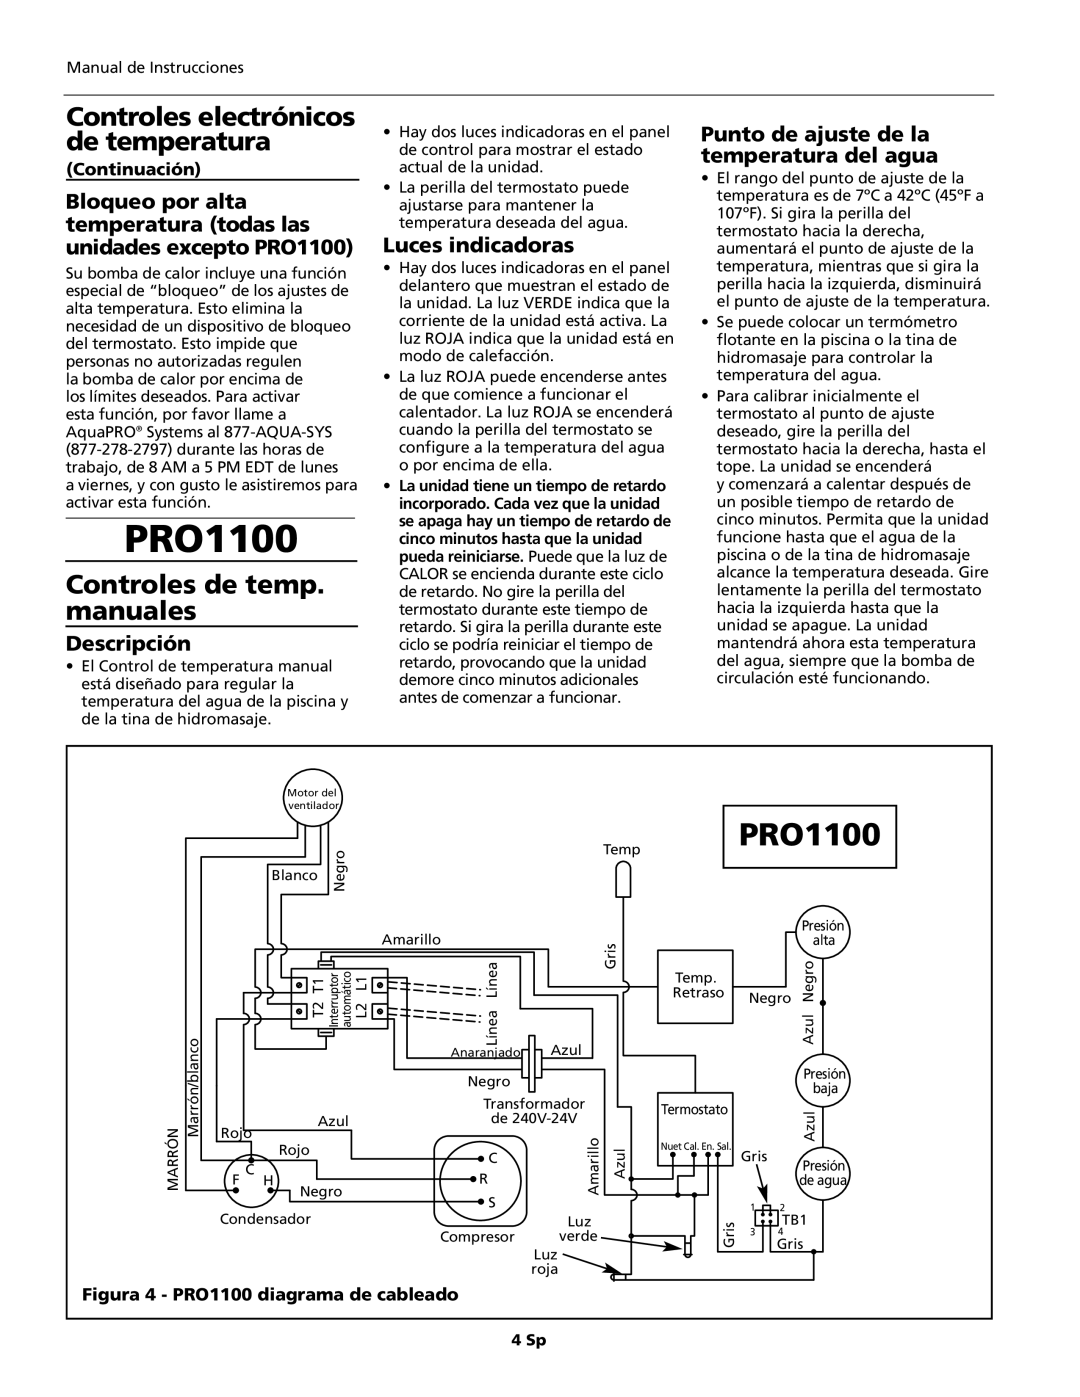 AquaPRO PRO1300 Controles electrónicos de temperatura, Controles de temp. manuales, Luces indicadoras, Continuación, 4 Sp 